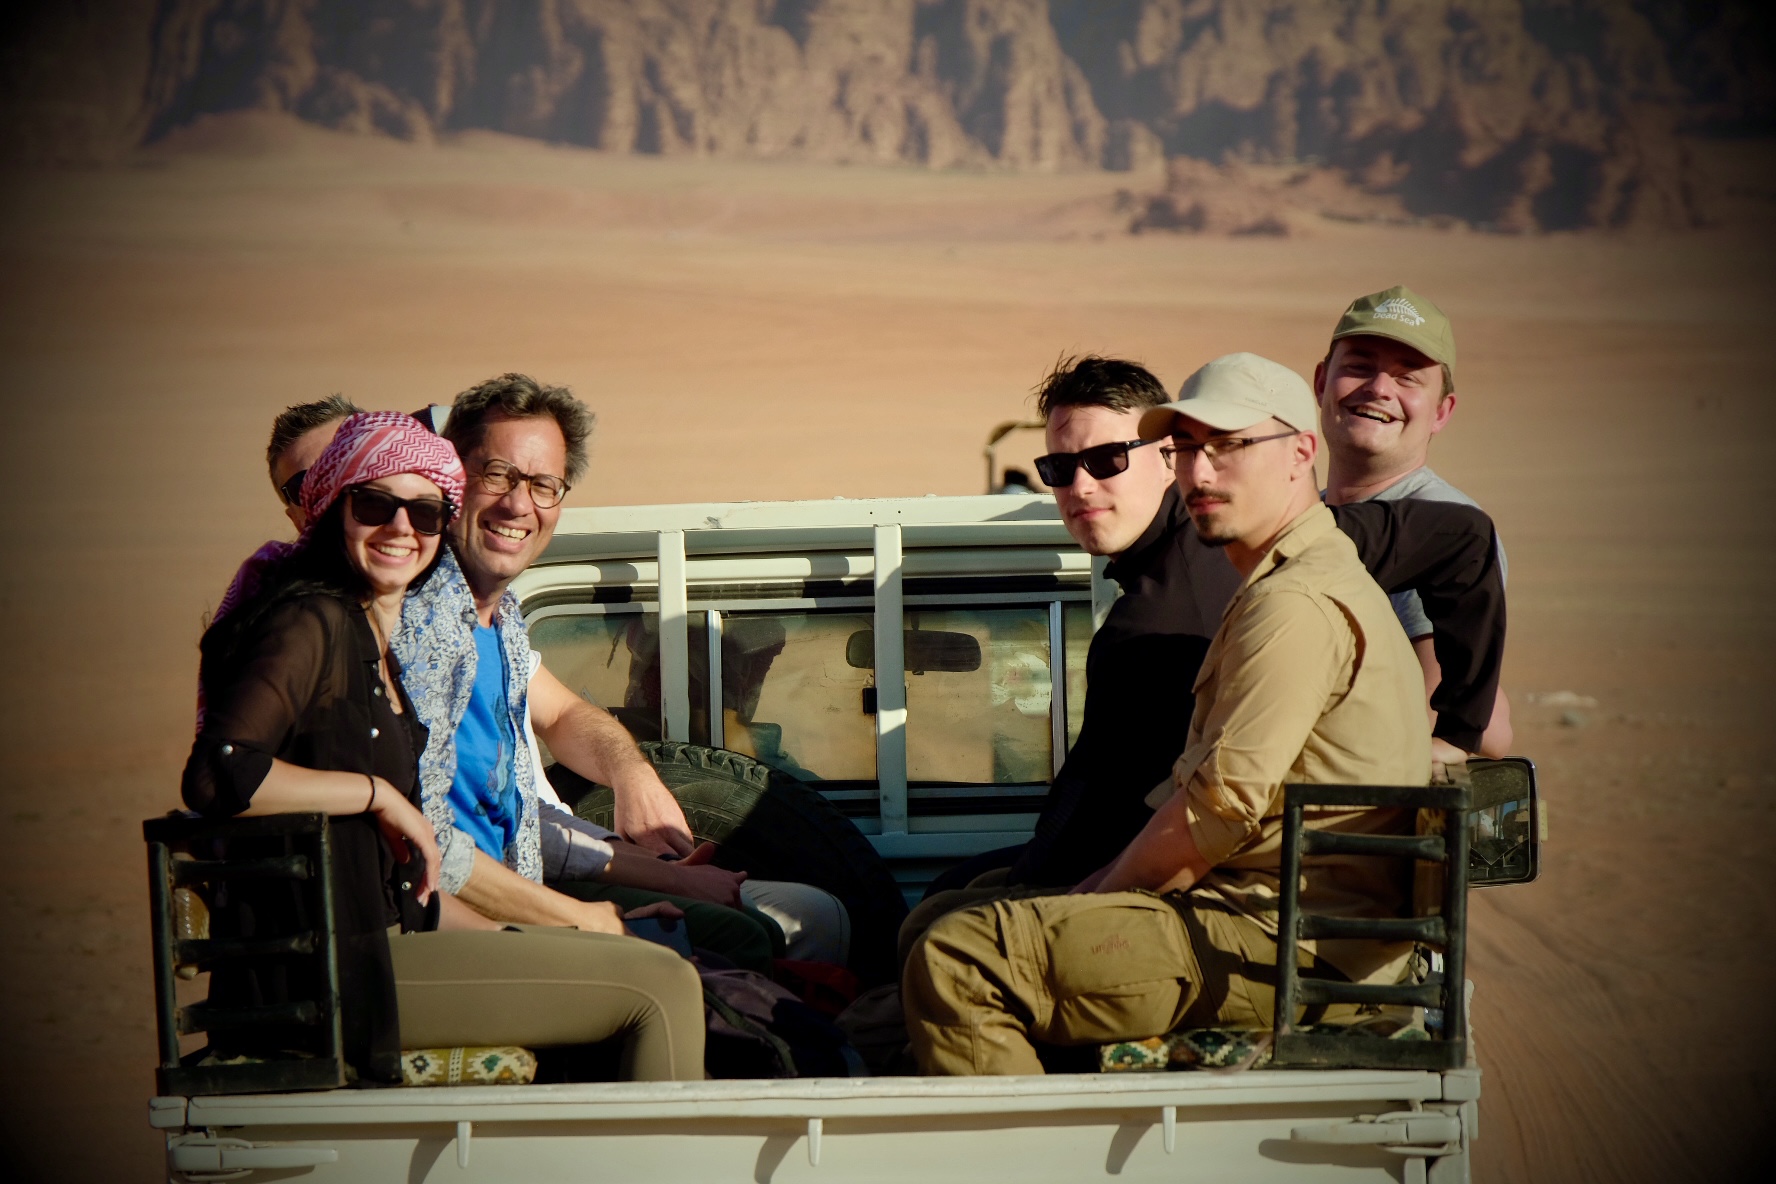 Wadi Rum 5